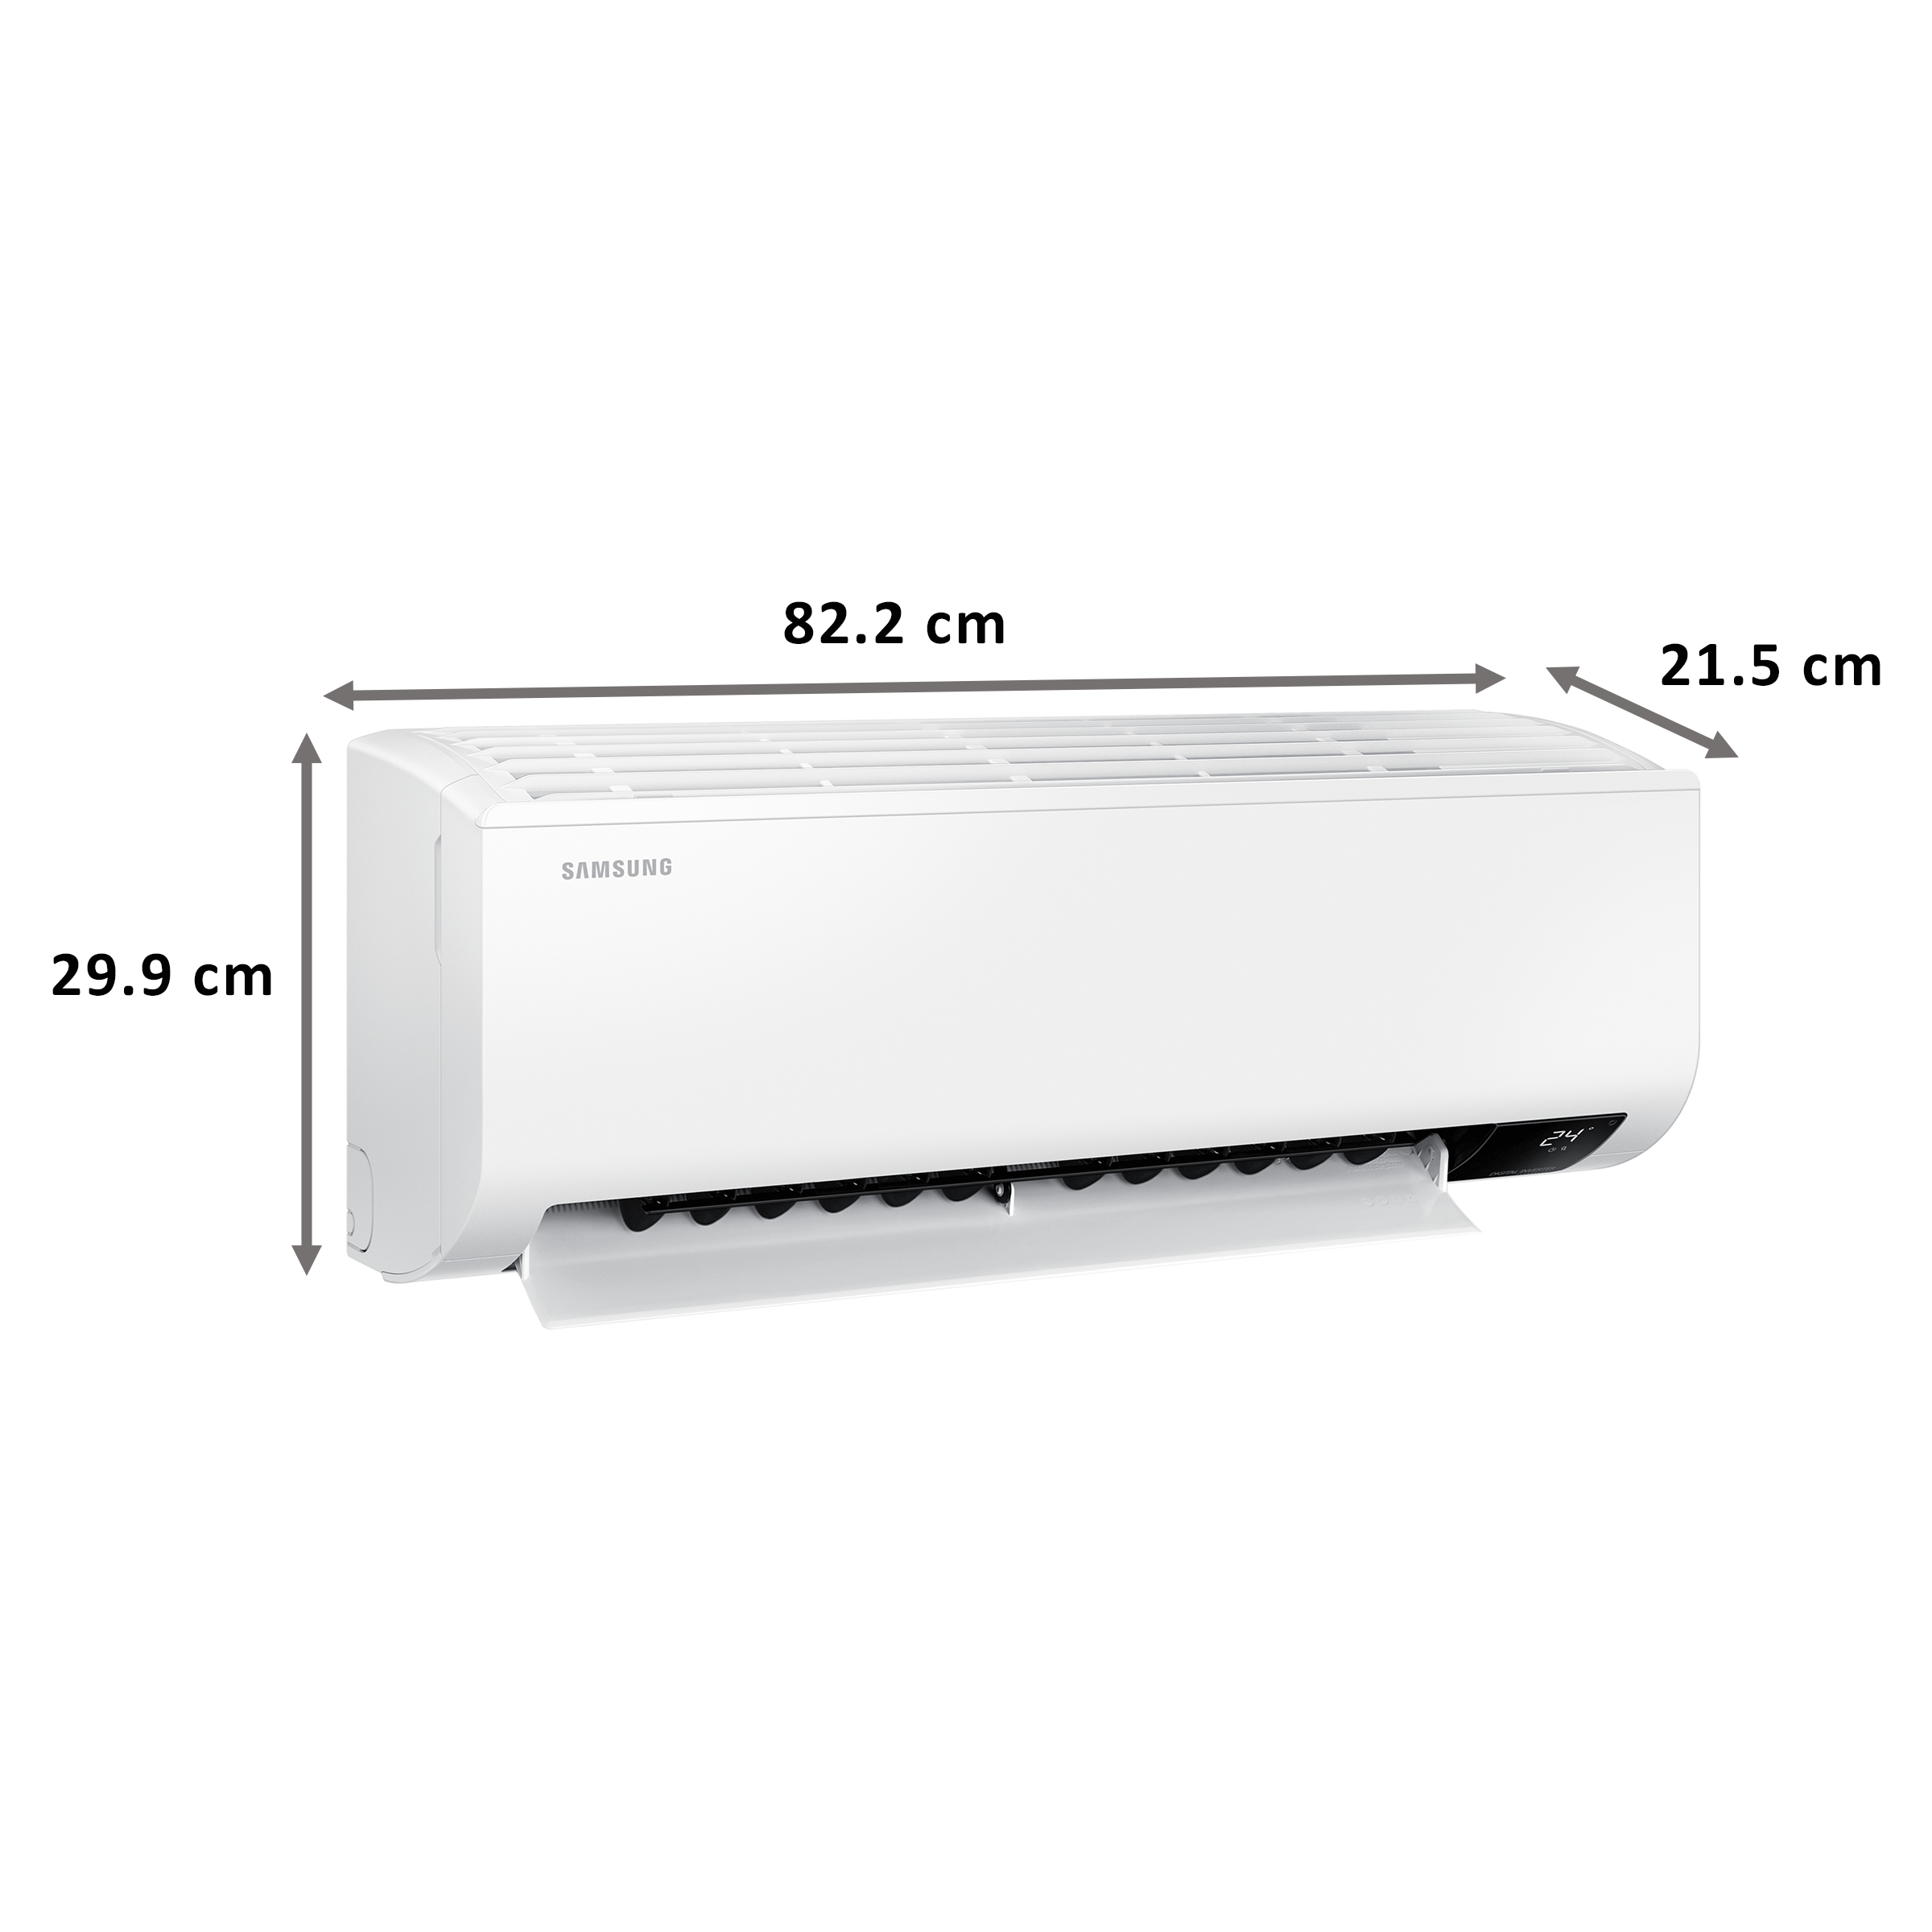 Samsung 1 Ton 4 Star Inverter Split AC (Hot and Cold, Copper Condenser, AR12AX4ZAWK, White)_2